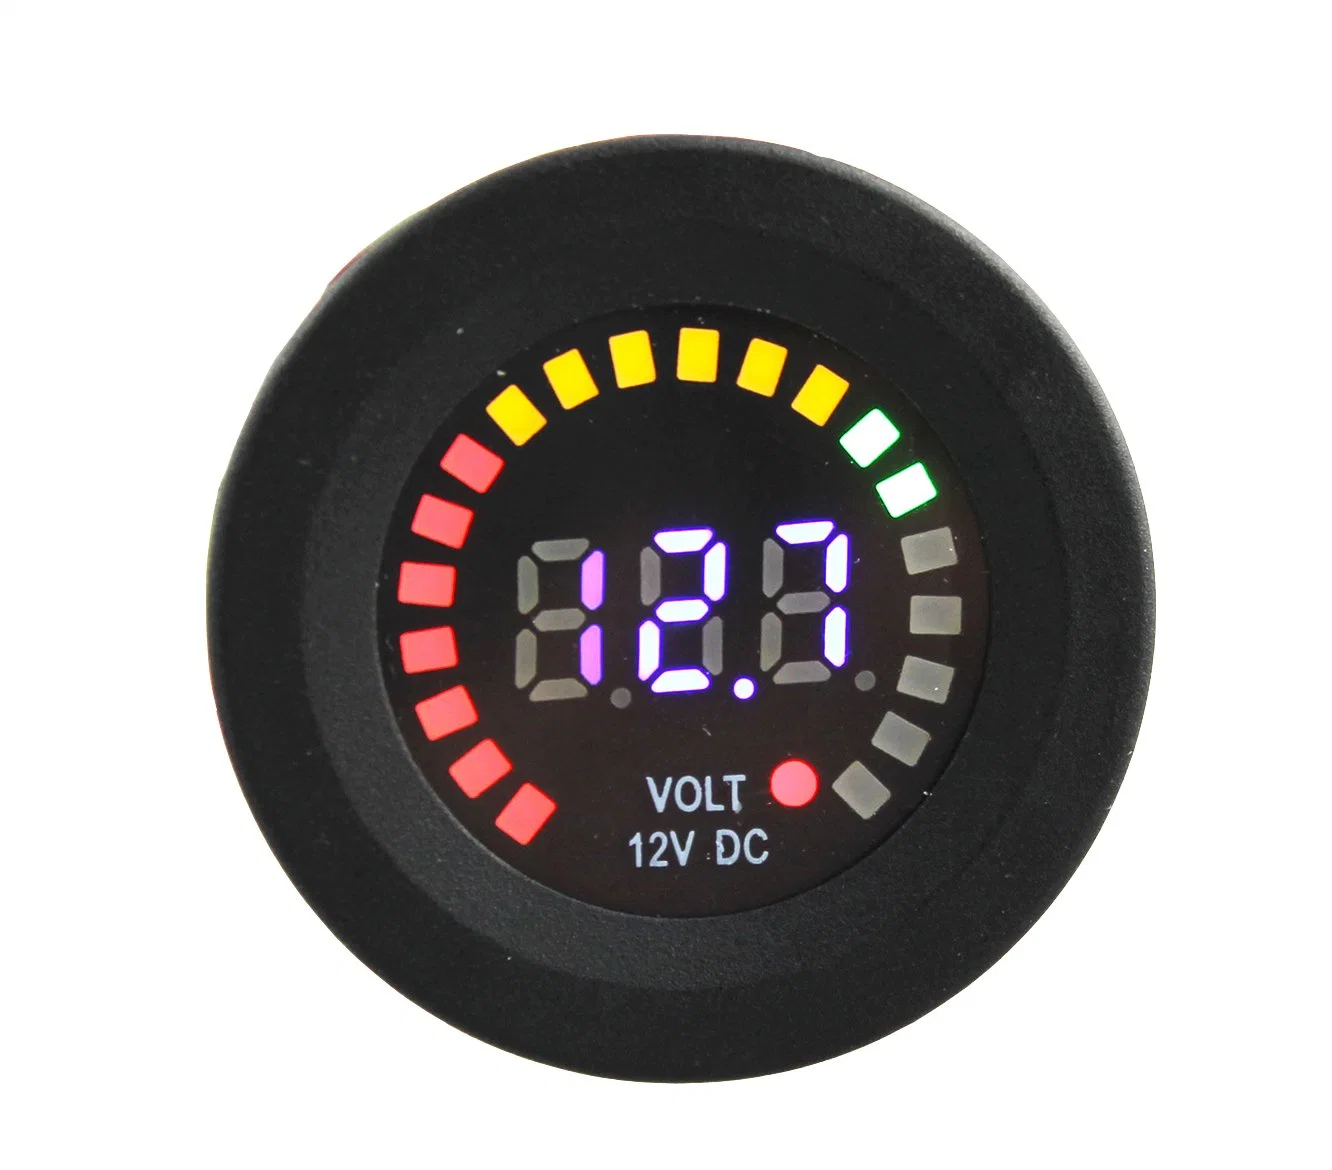 DC 12V Universal LED Digital Display Voltmeter